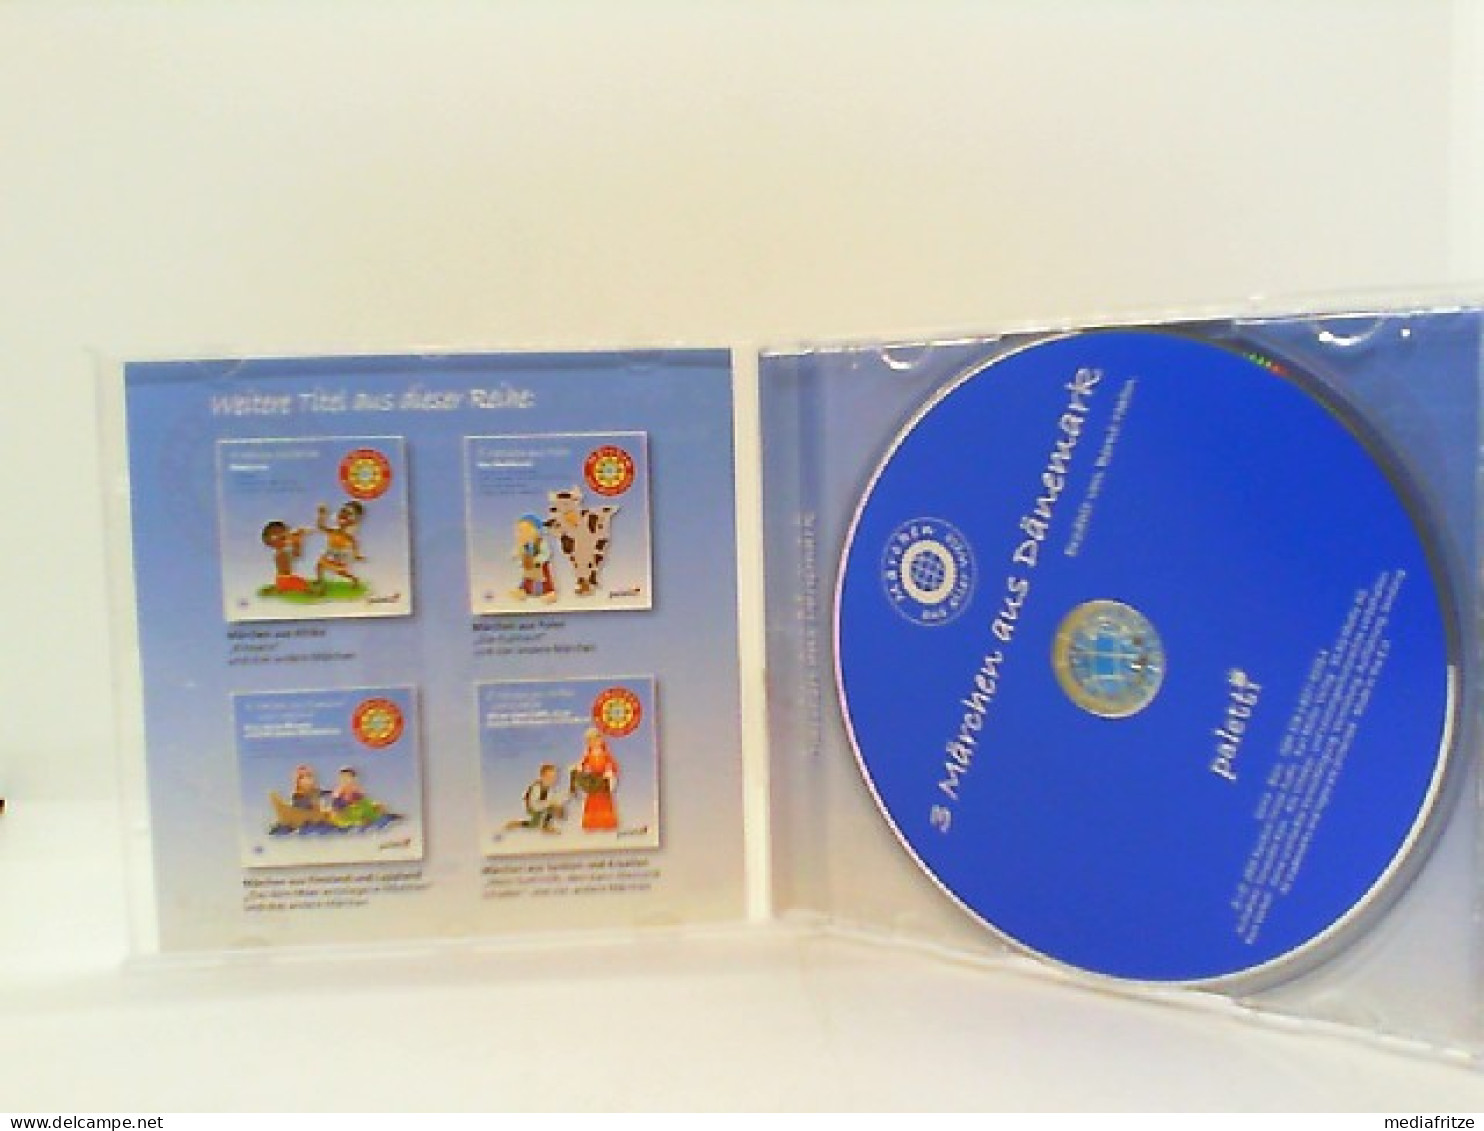 Märchen Aus Aller Welt 3 Märchen Aus Dänemark - Hans Meernixensohn - Peter Ochs - Fiddiwau - Hörbuch 1 CD Neu! - Altri Libri Parlati